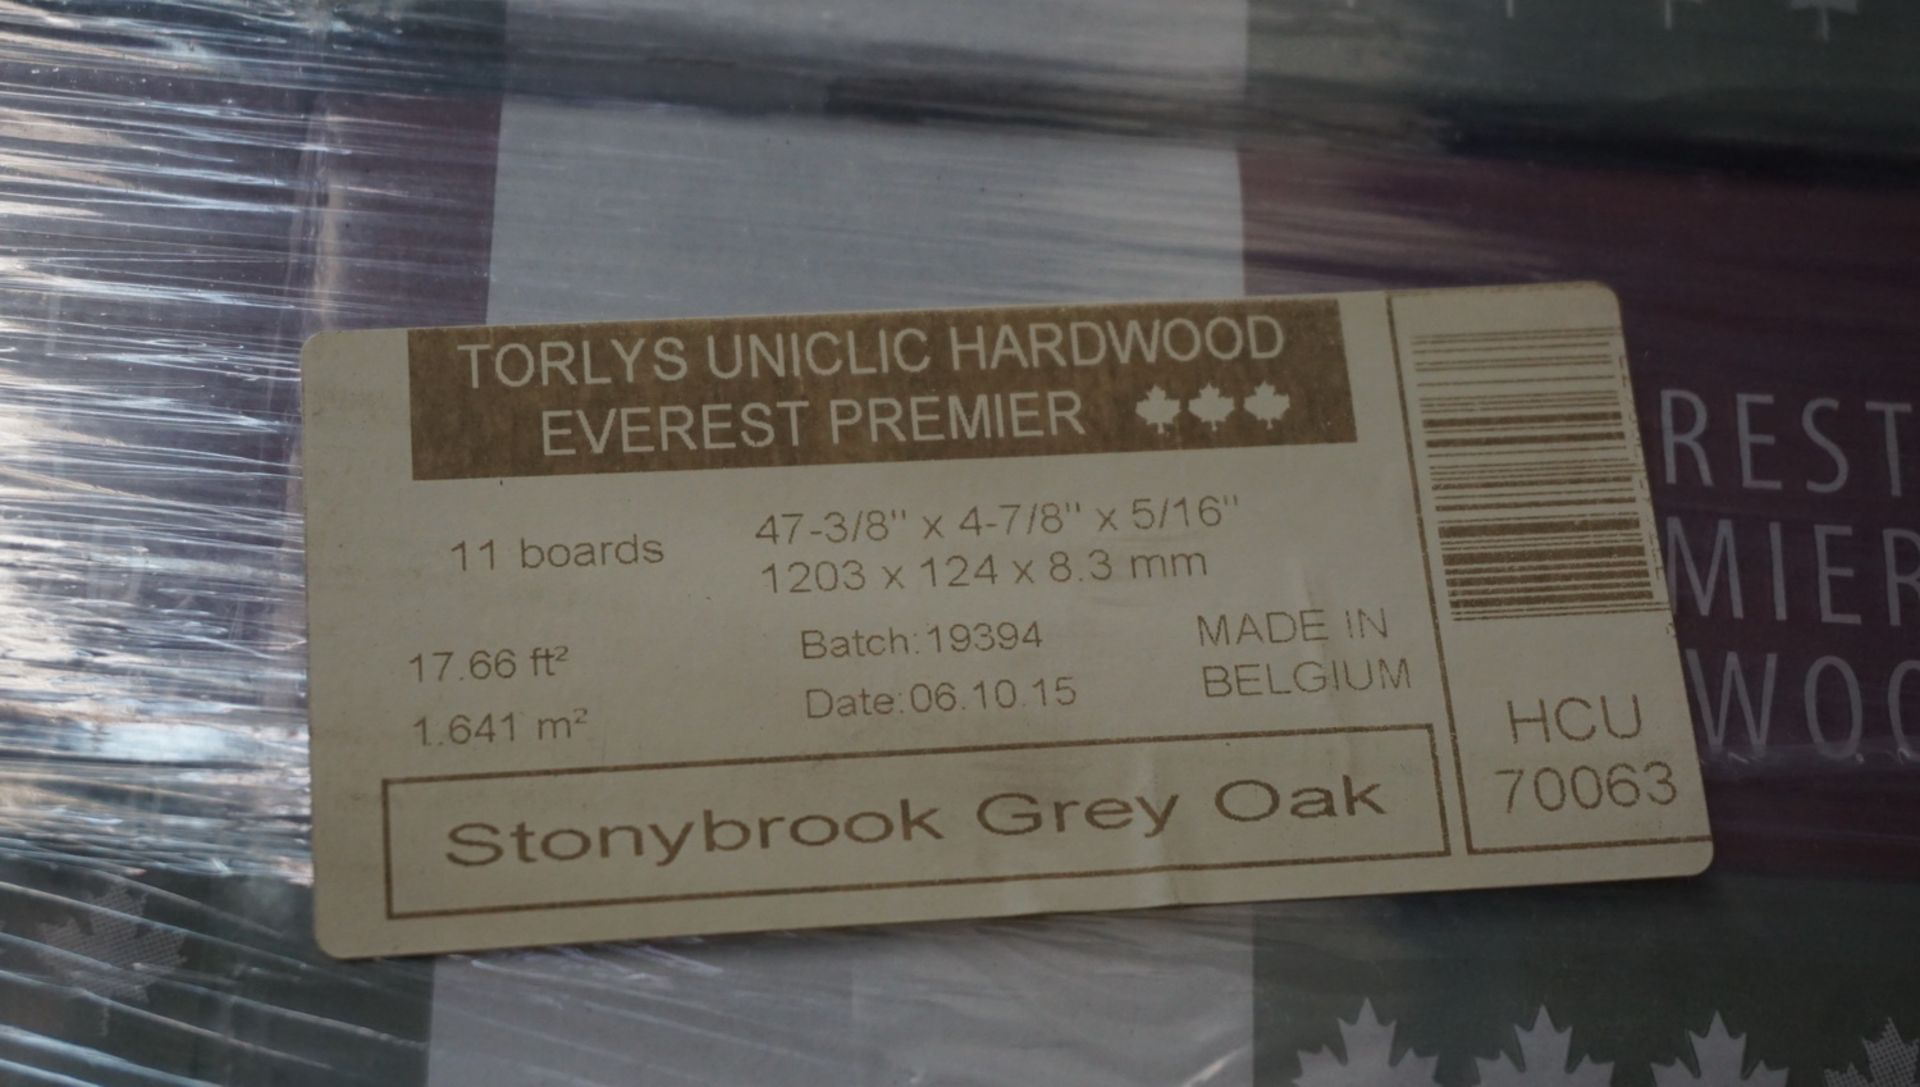 BOXES - TORLYS EVEREST PREMIER STONYBROOK GREY OAK ENGINEERED HARDWOOD 4-7/8" X 5/16" (17.66 - Image 3 of 3